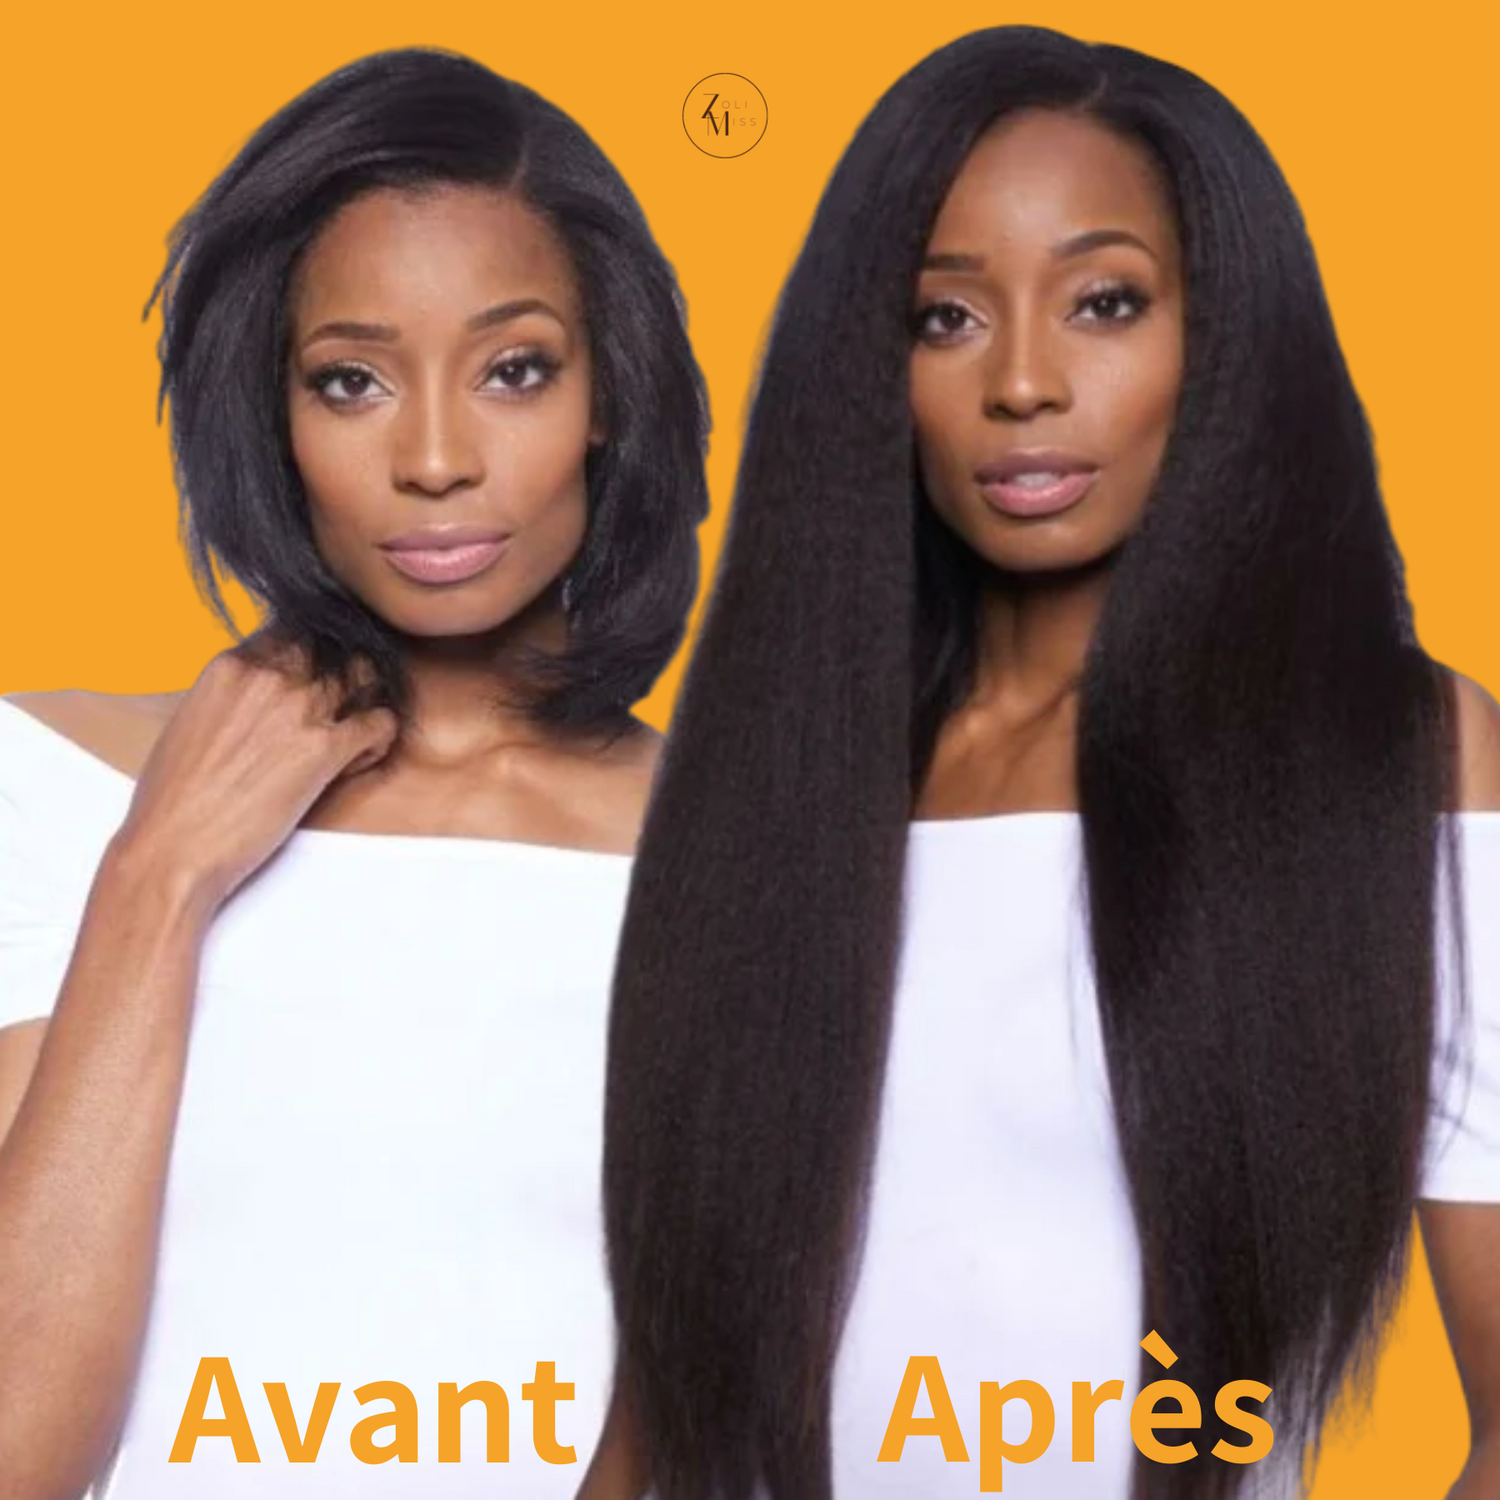 Avant et après transformation d'une femme avec des extensions à clips, montrant des cheveux afro naturels courts et une chevelure longue et volumineuse avec des extensions kinky straight.